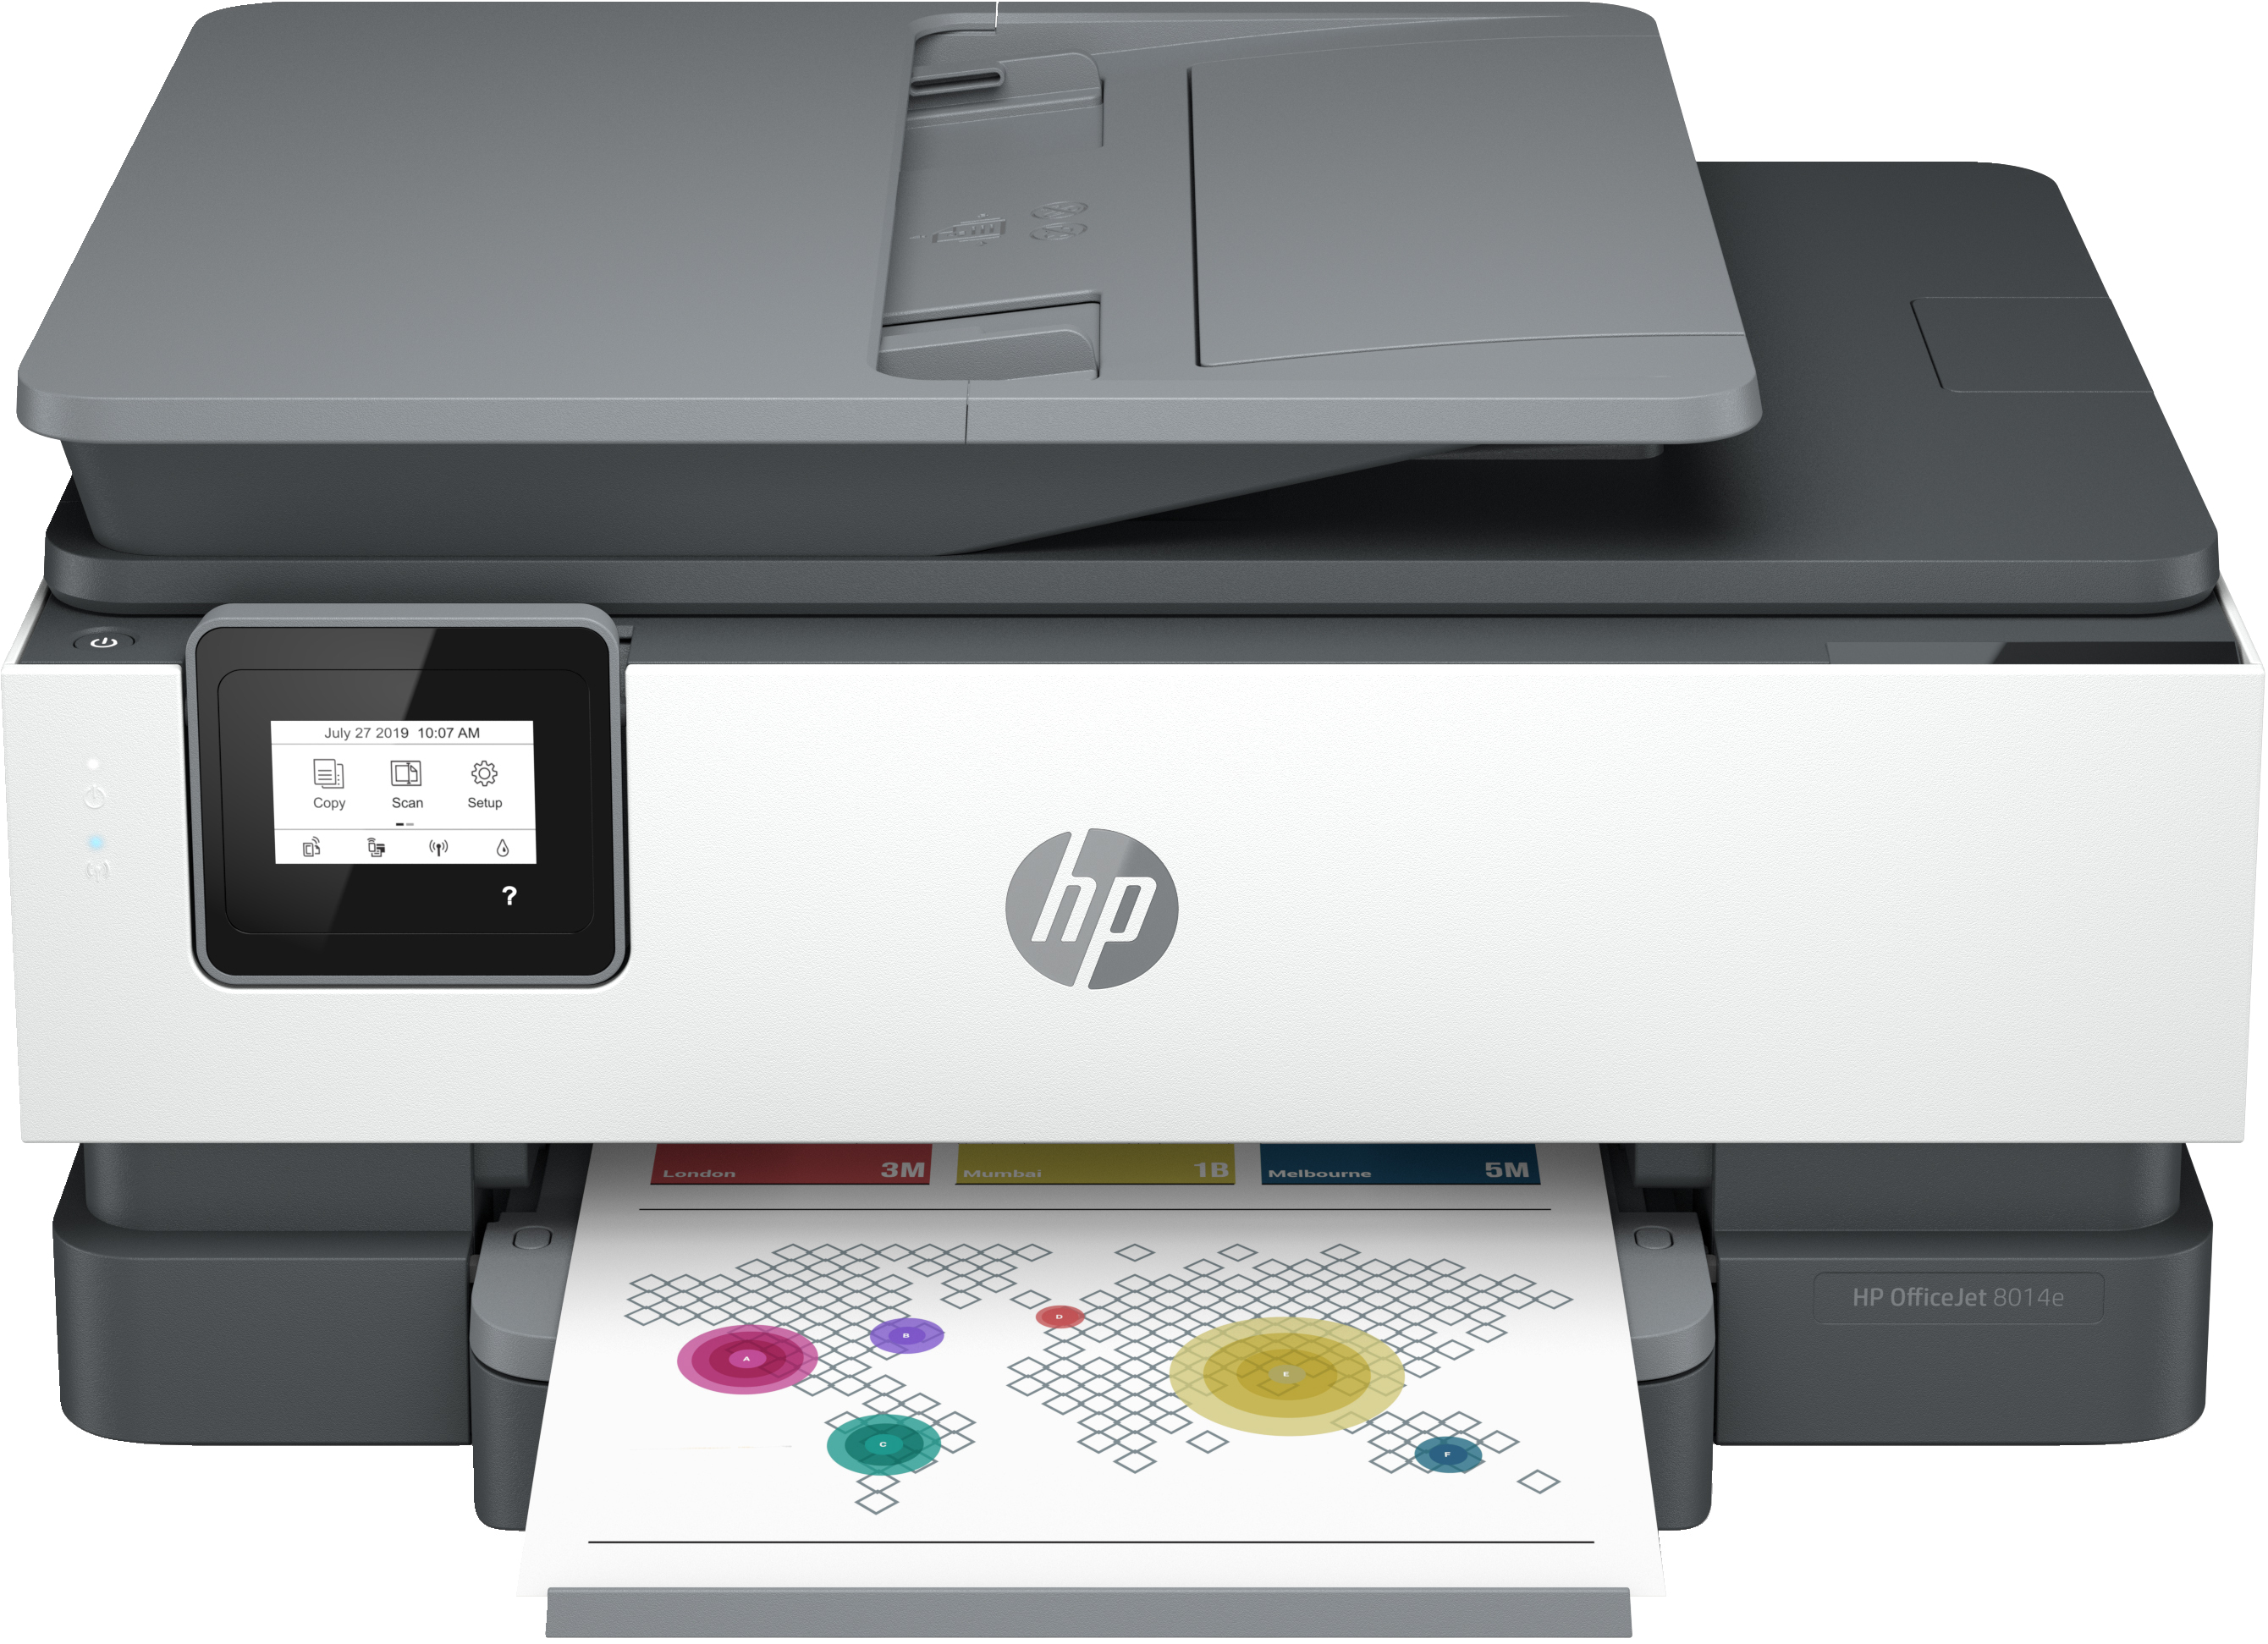 Image of HP OfficeJet Stampante multifunzione HP 8014e, Colore, Stampante per Casa, Stampa, copia, scansione, HP+; idoneo per HP Instant Ink; alimentatore automatico di documenti; stampa fronte/retro